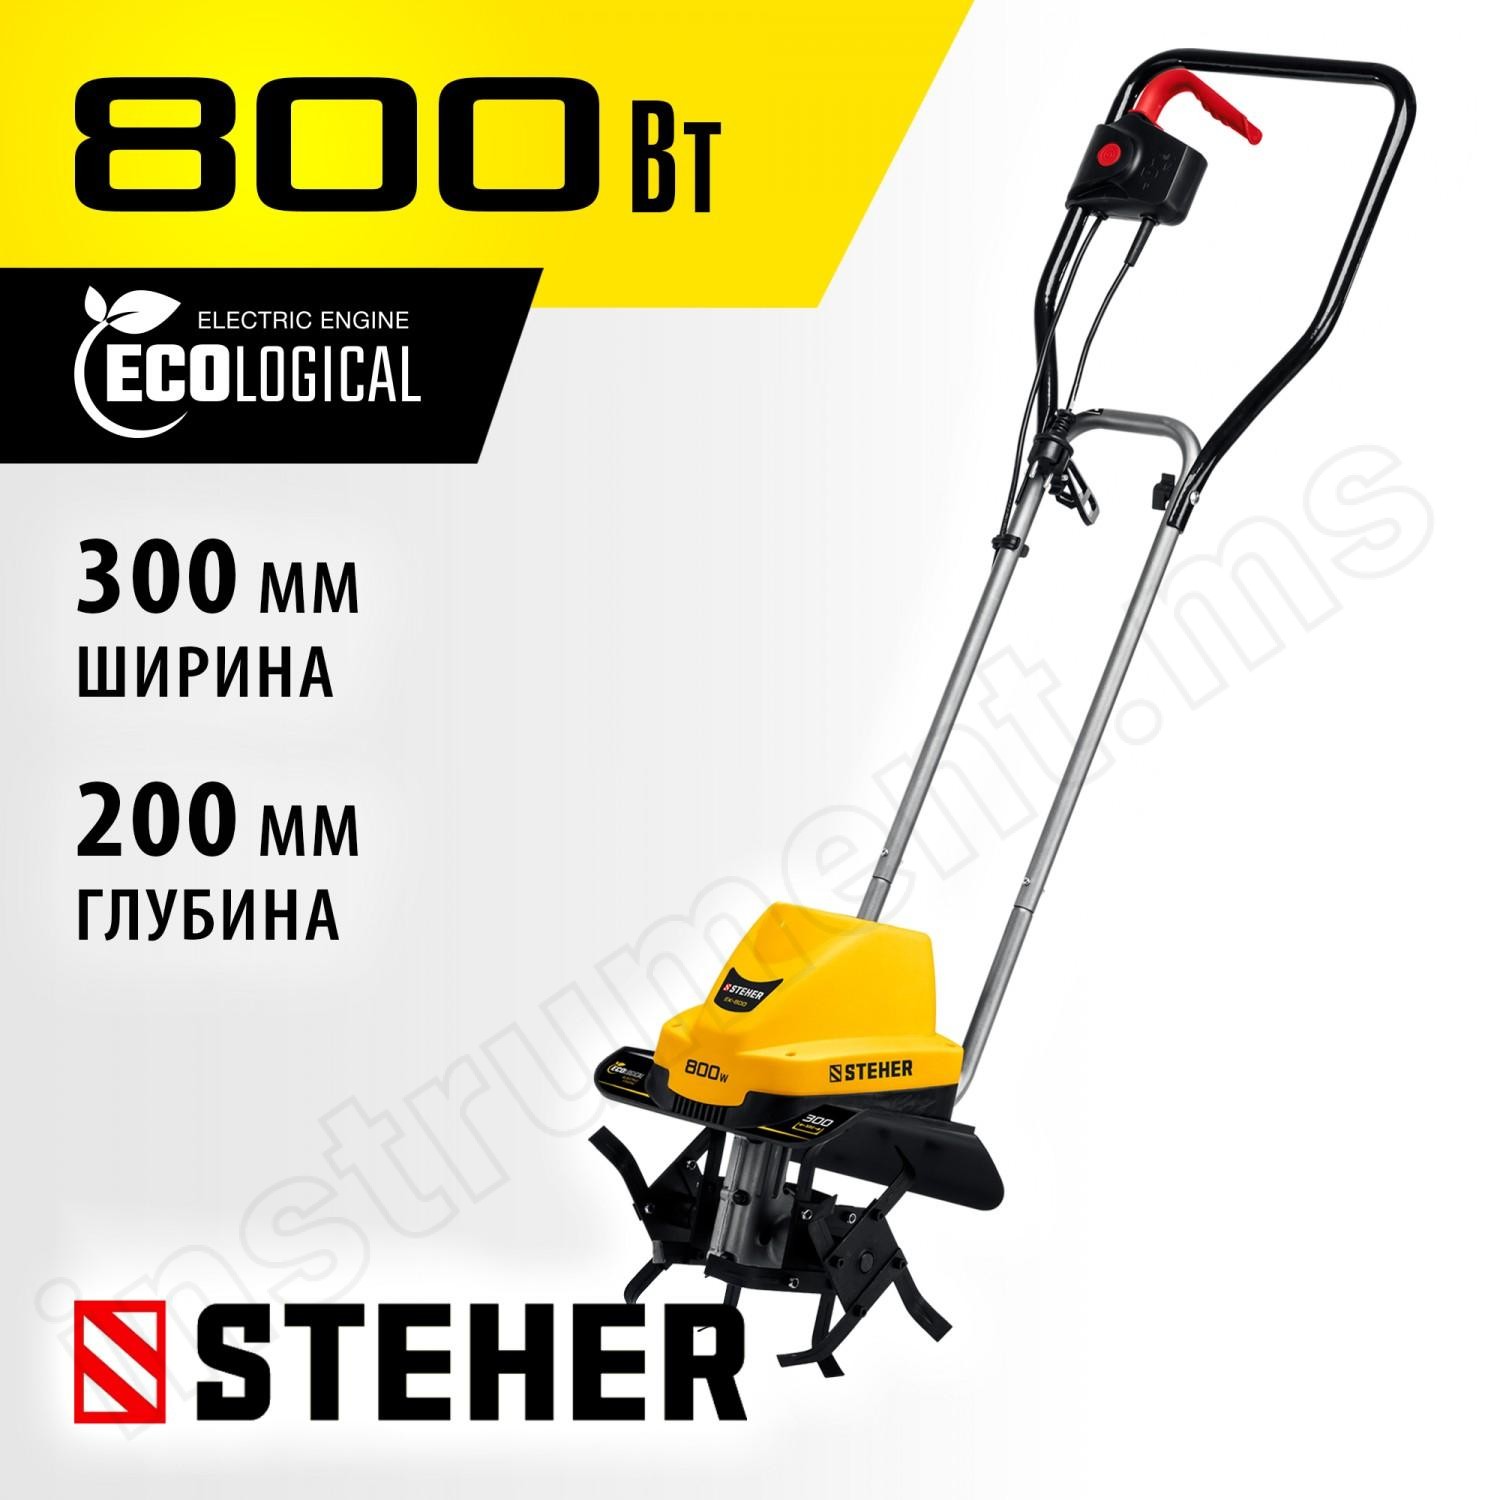 STEHER 800 Вт, 300 мм ширина обработки, 1 скорость, культиватор электрический EK-800 - фото 1